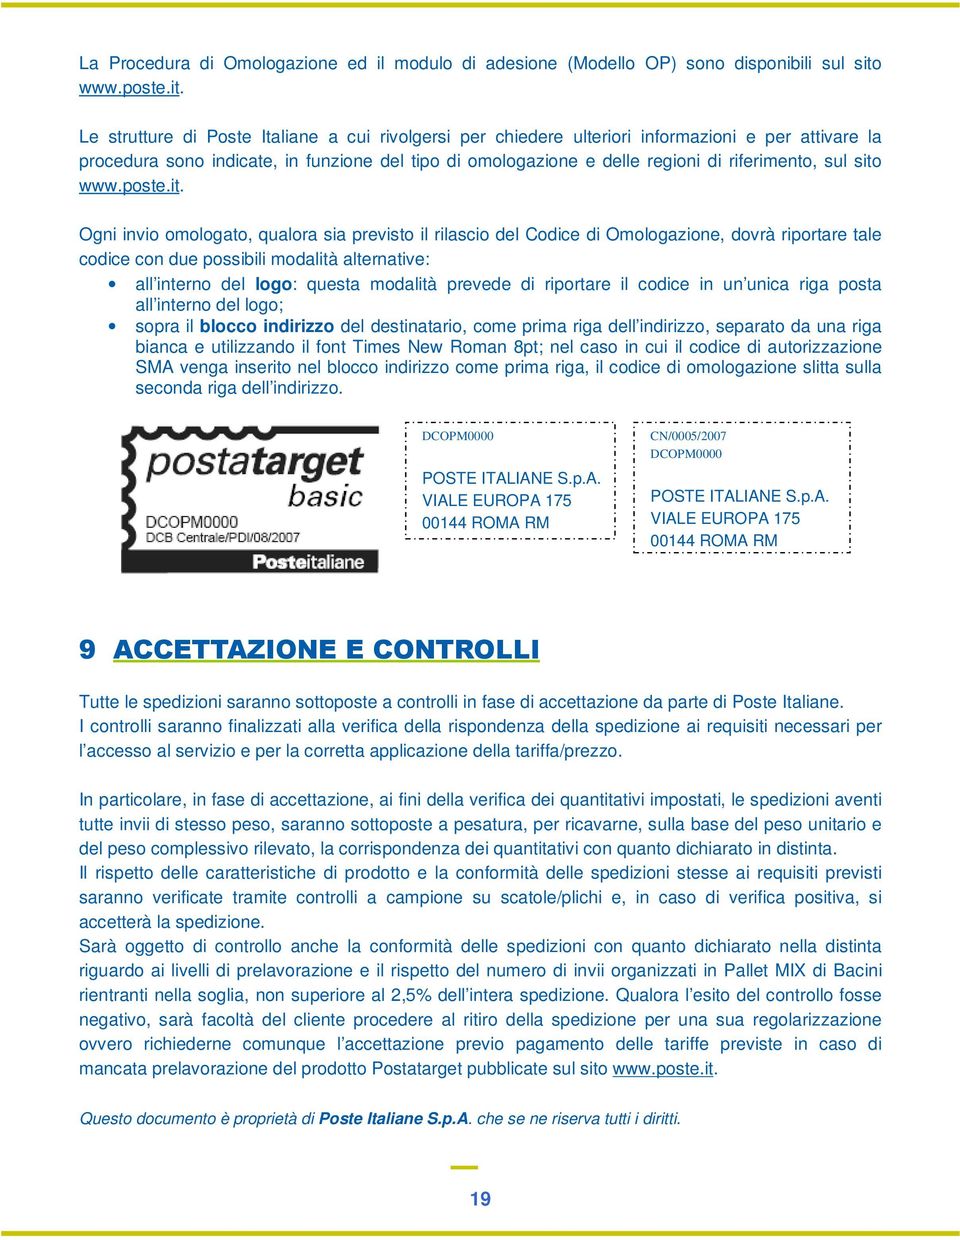 Le strutture di Poste Italiane a cui rivolgersi per chiedere ulteriori informazioni e per attivare la procedura sono indicate, in funzione del tipo di omologazione e delle regioni di riferimento, sul